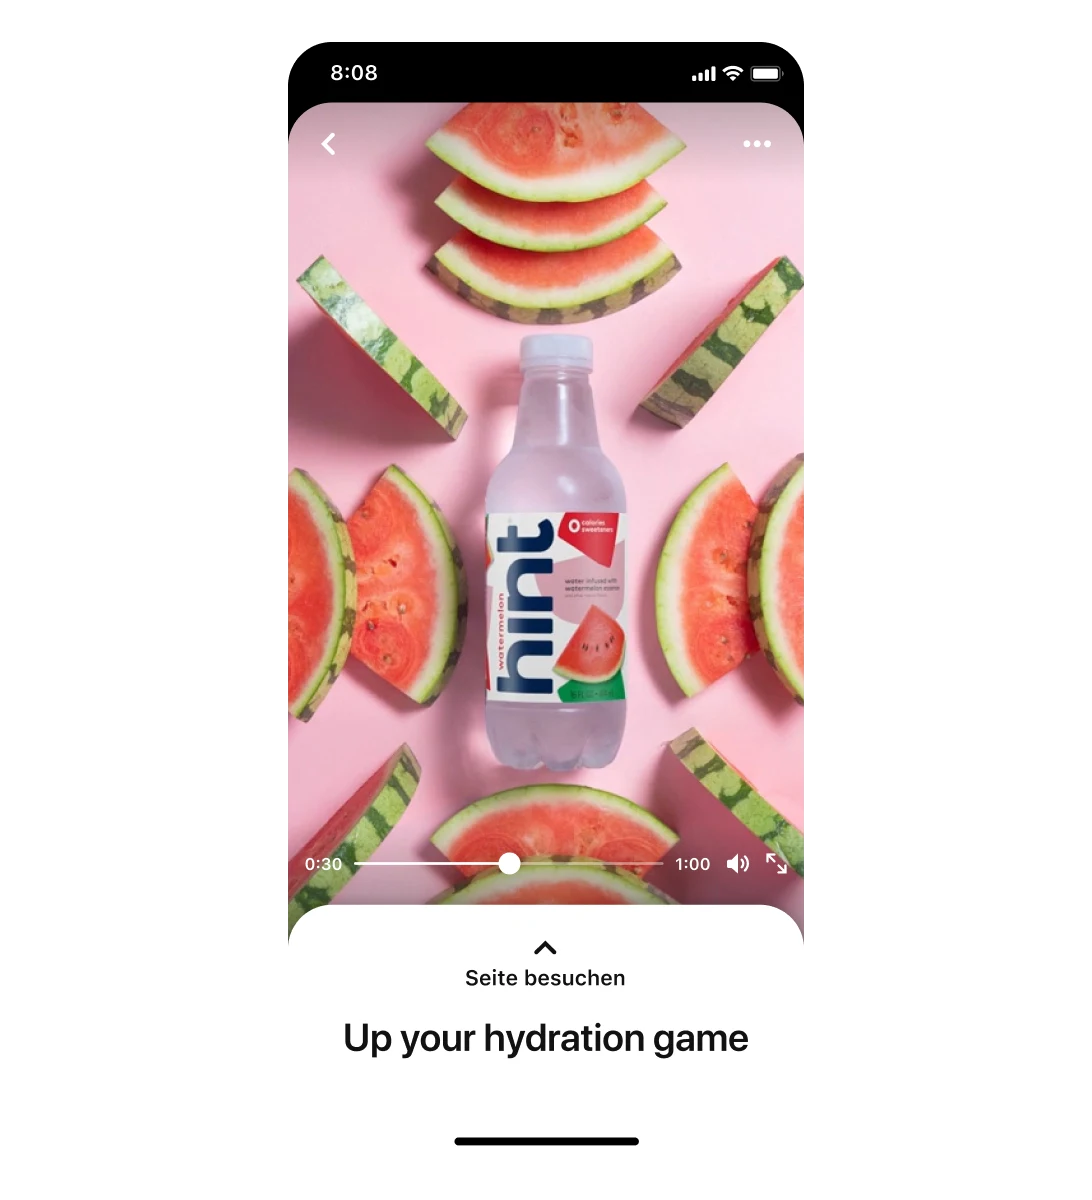 Mobilansicht einer Premiere Spotlight-Anzeige von hint, in der Wasser mit Wassermelonen-Geschmack umgeben von Wassermelonen-Stücken zu sehen ist. Die Beschreibung lautet „Genug trinken? Ganz easy“.